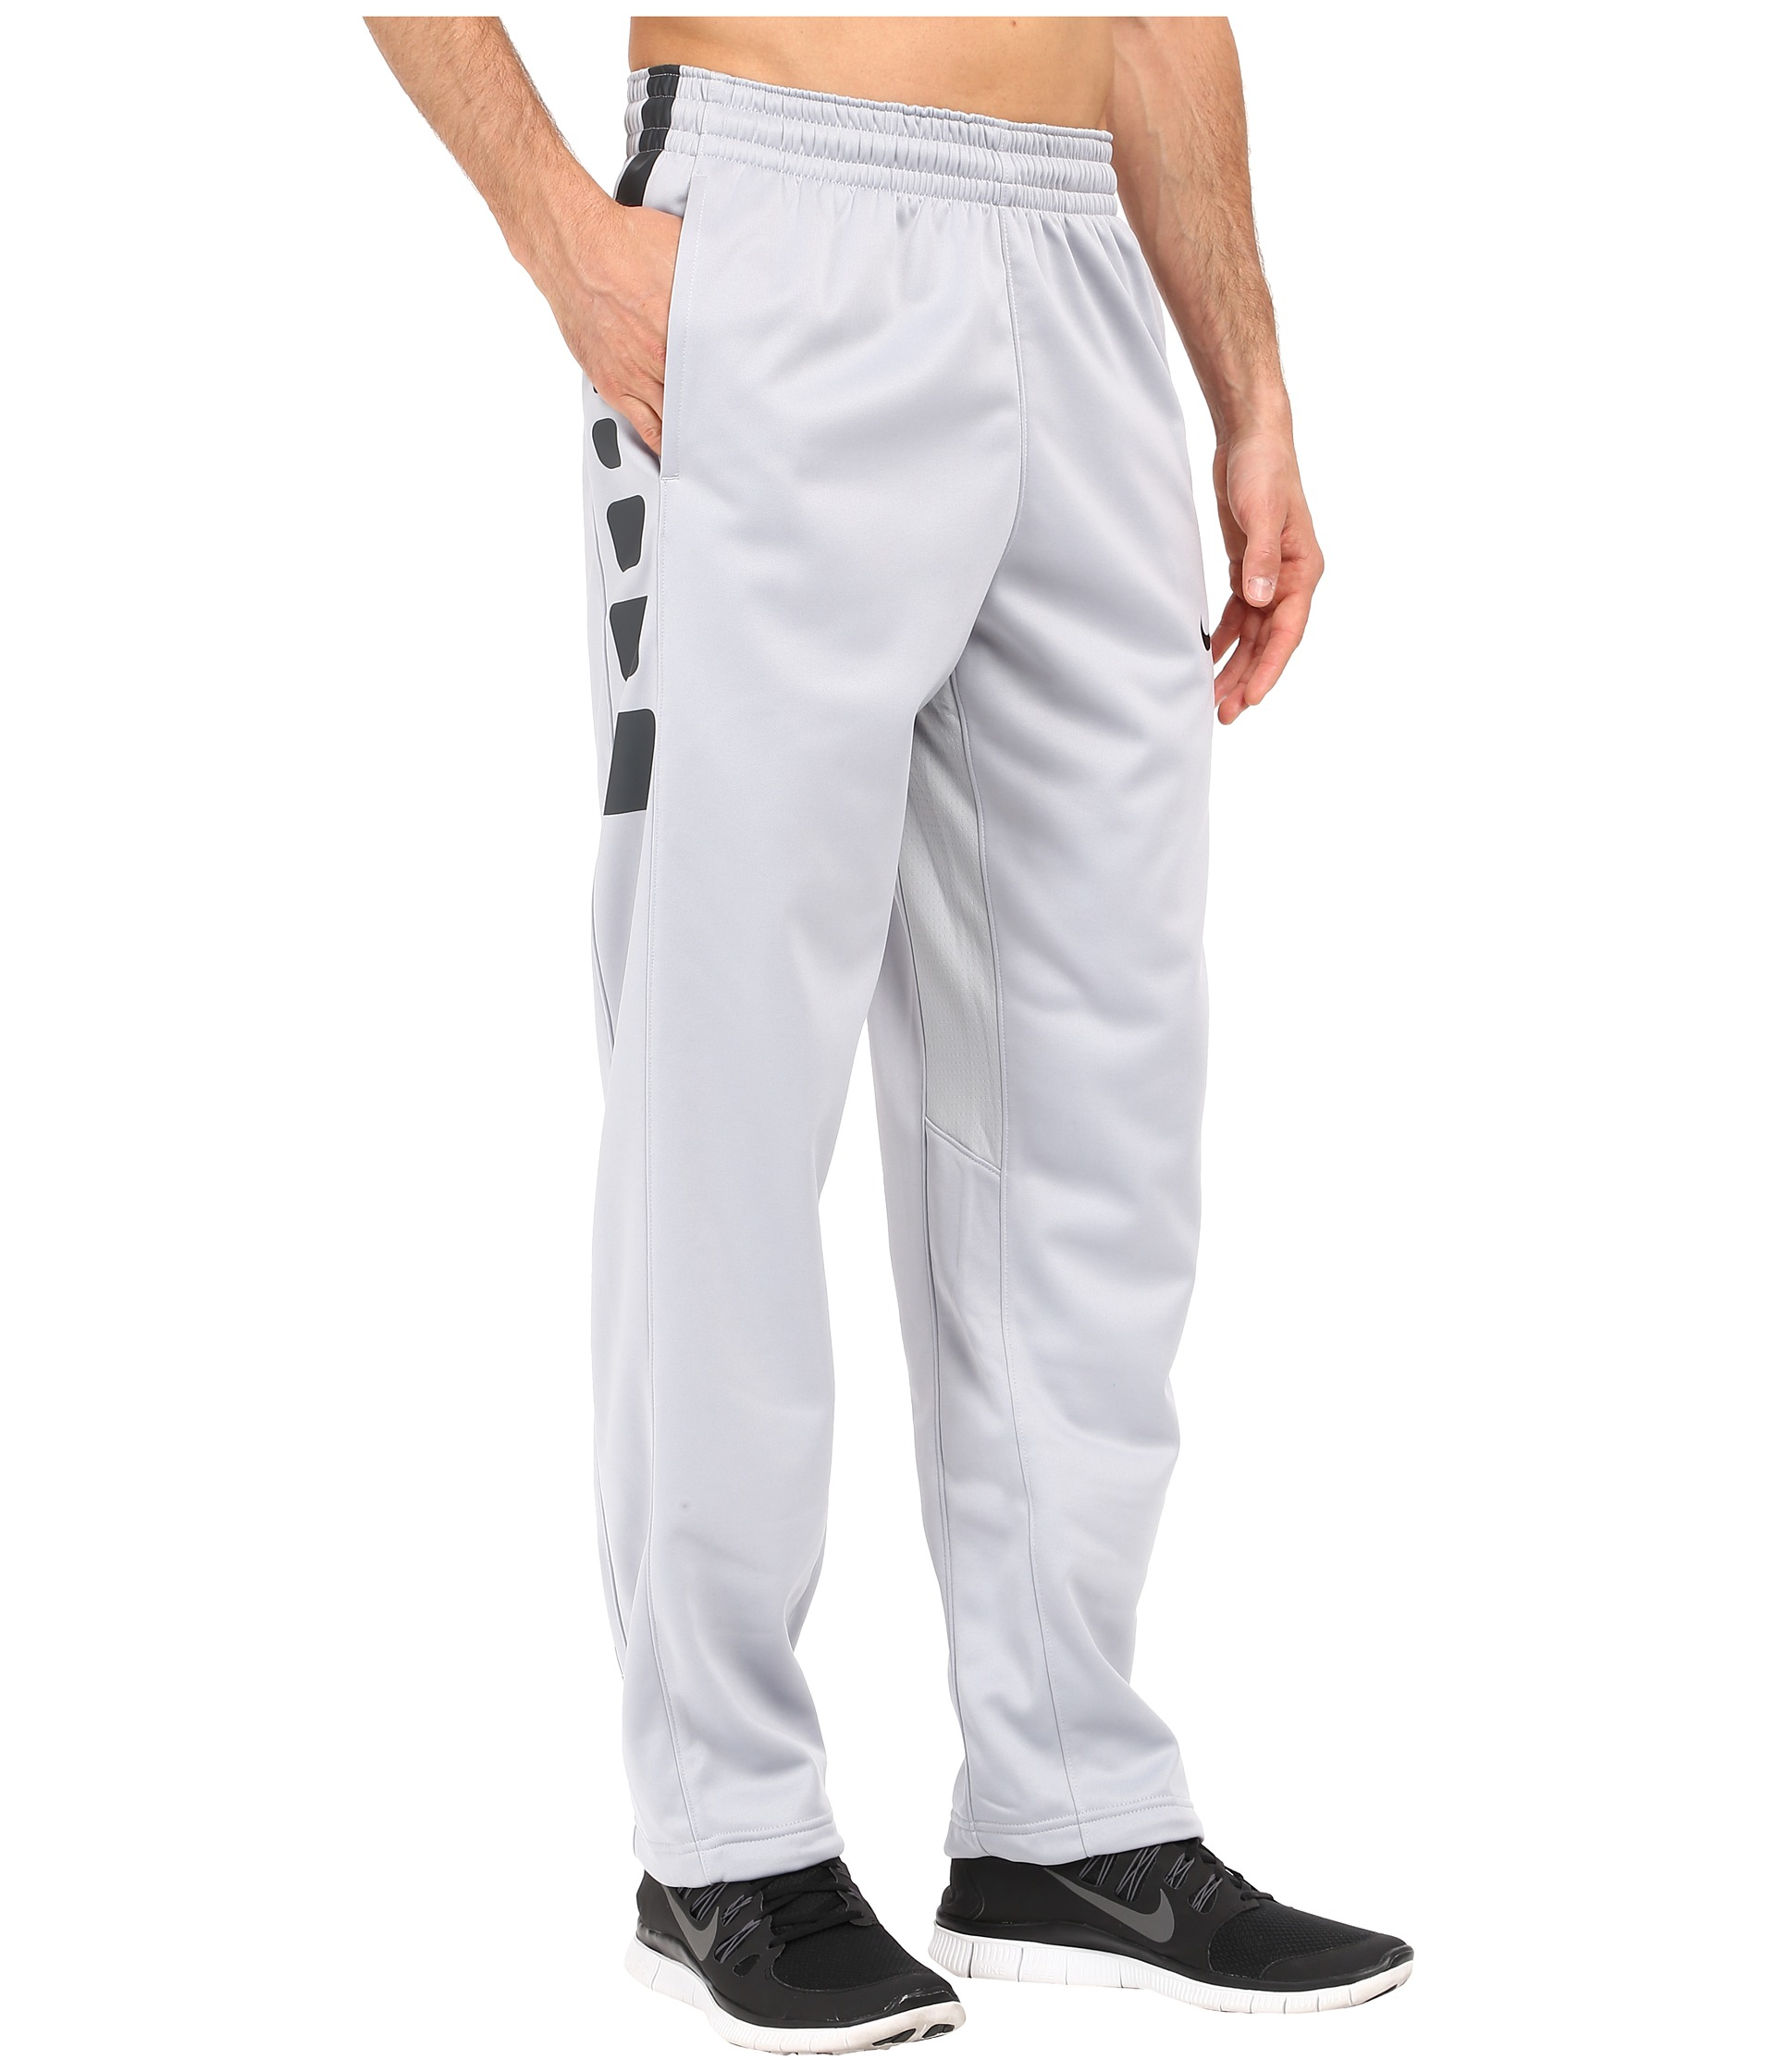 Nike Fleece Elite Stripe Pants in Gray for Men - Lyst